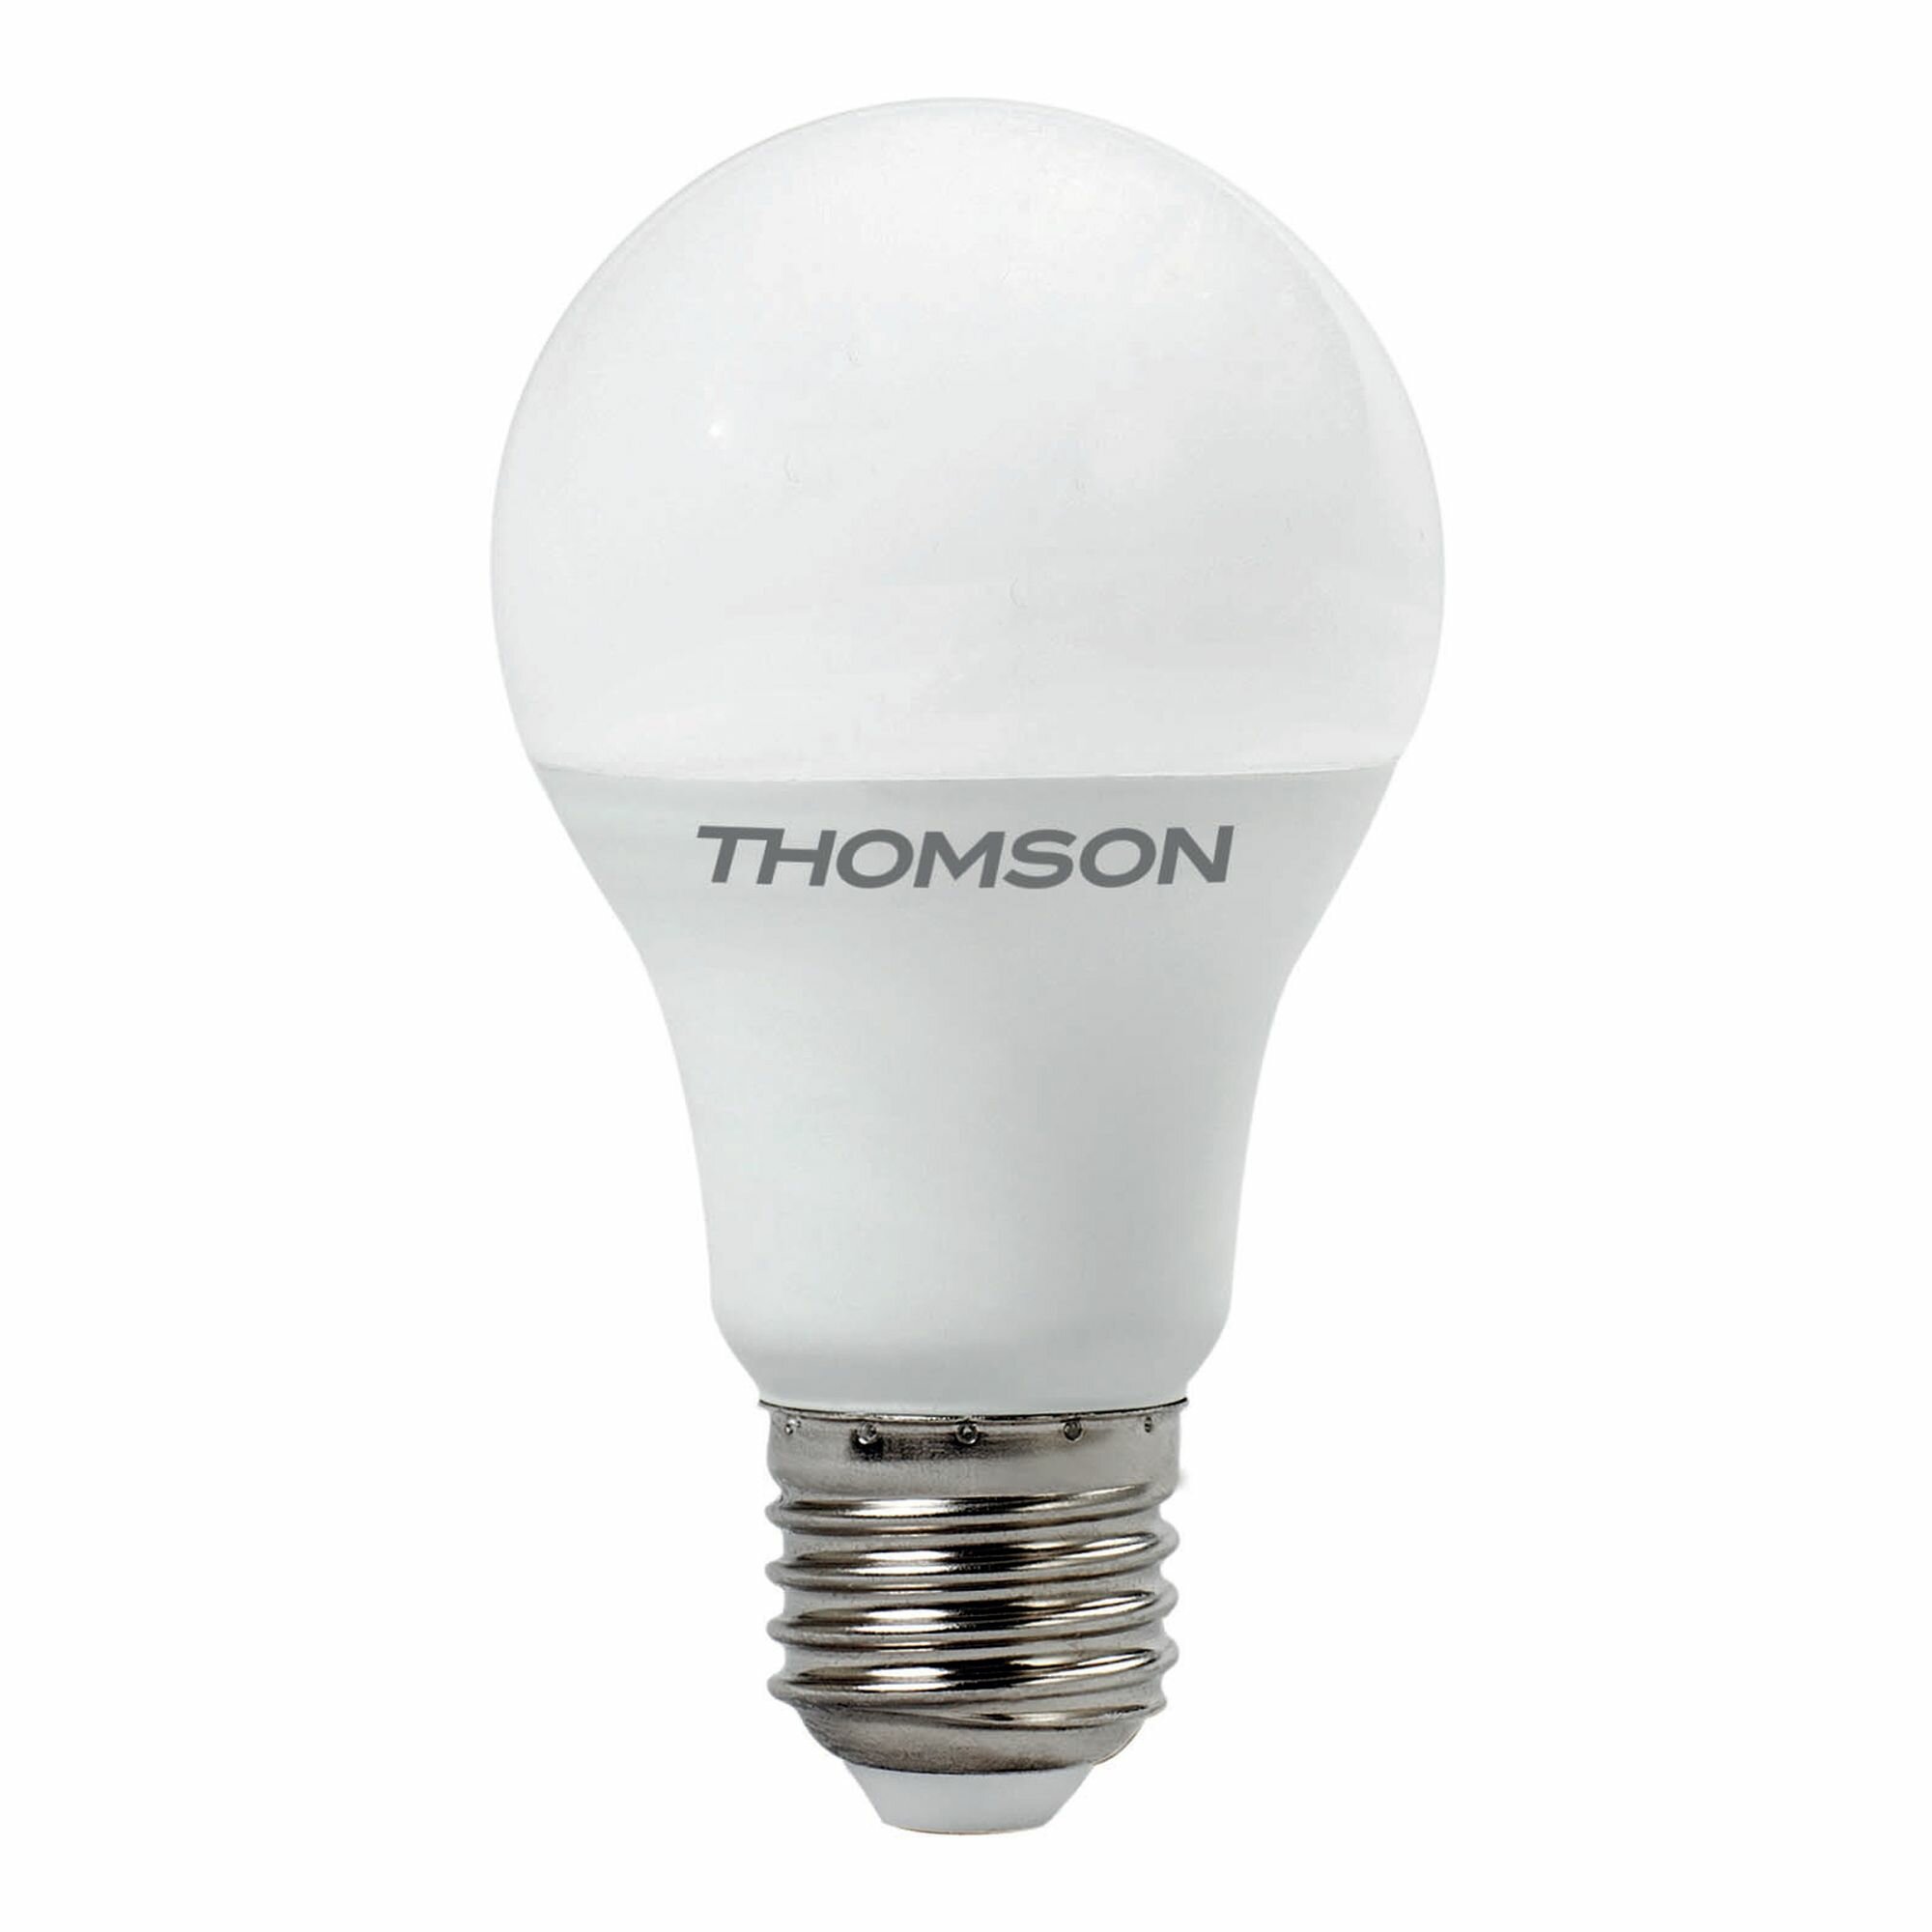 Лампочка Thomson TH-B2006, 11 Вт, E27, 4000K, груша, нейтральный белый свет